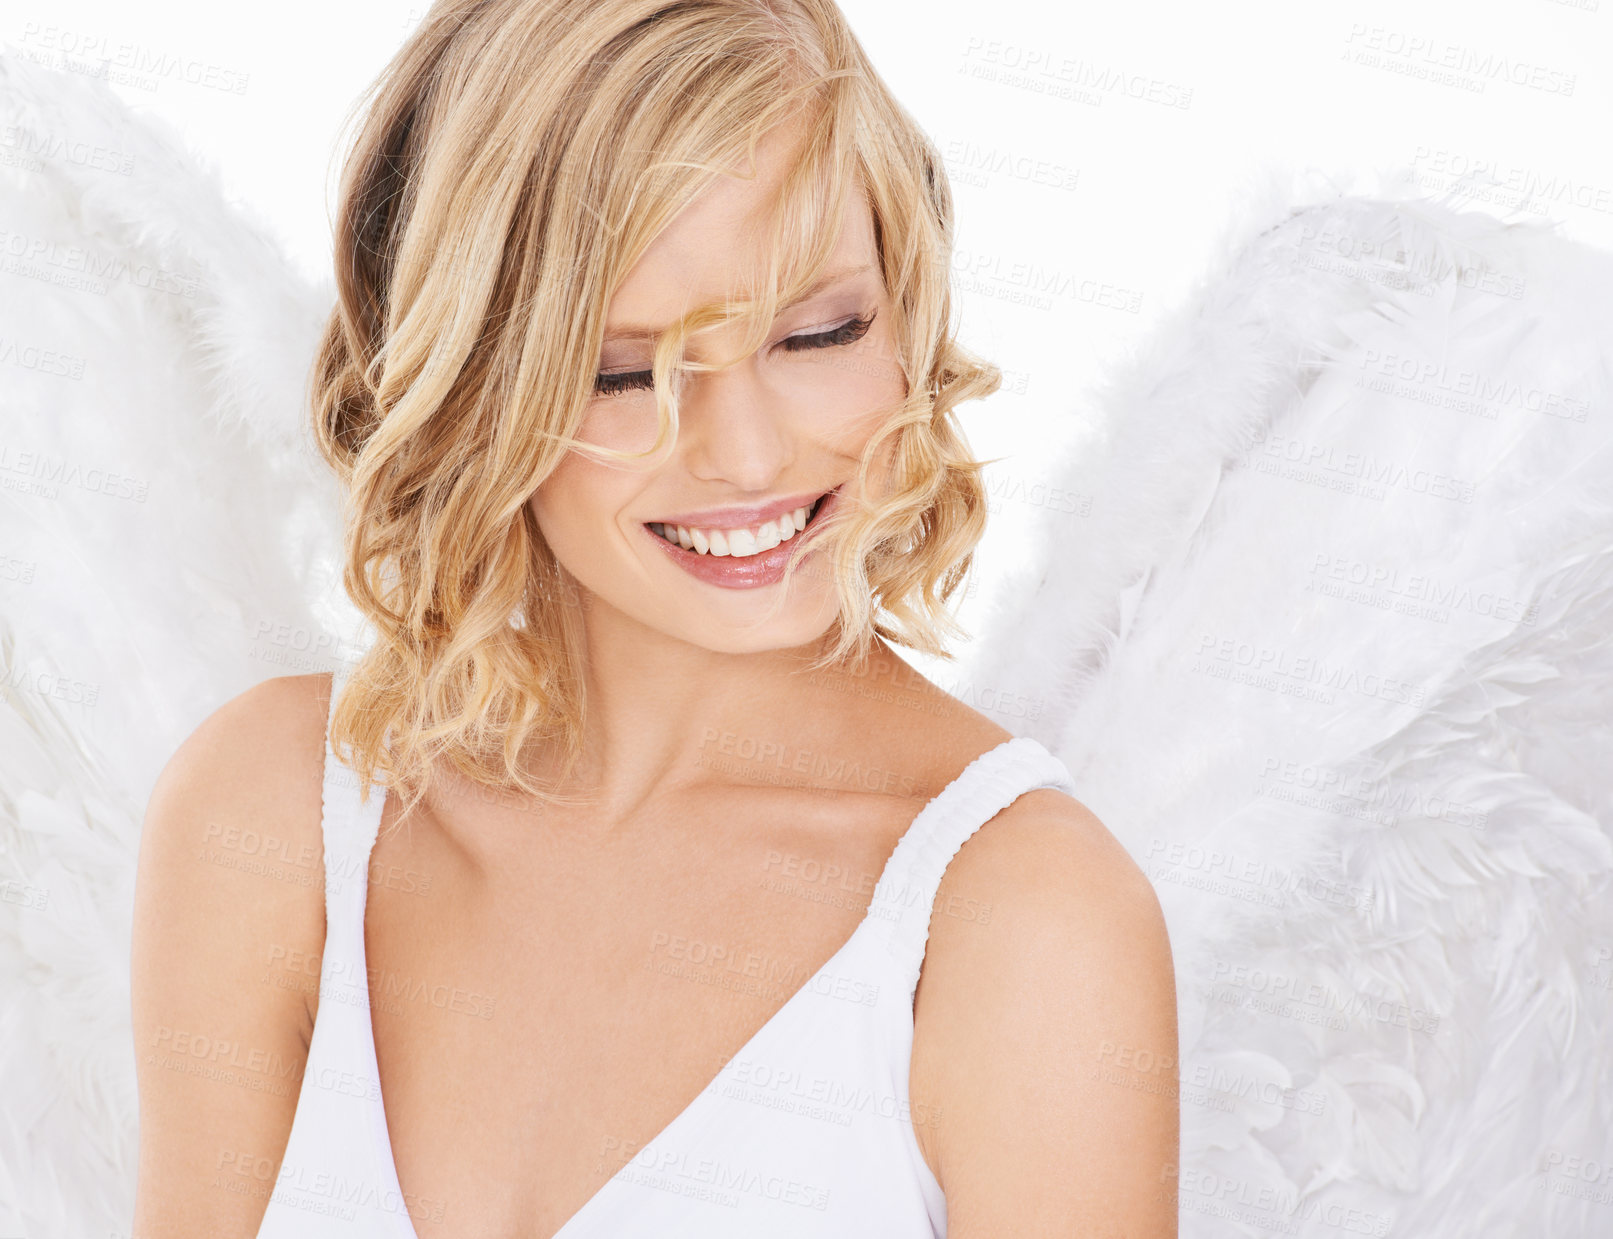 Buy stock photo Studio shot of a beautiful young woman wearing angel wings